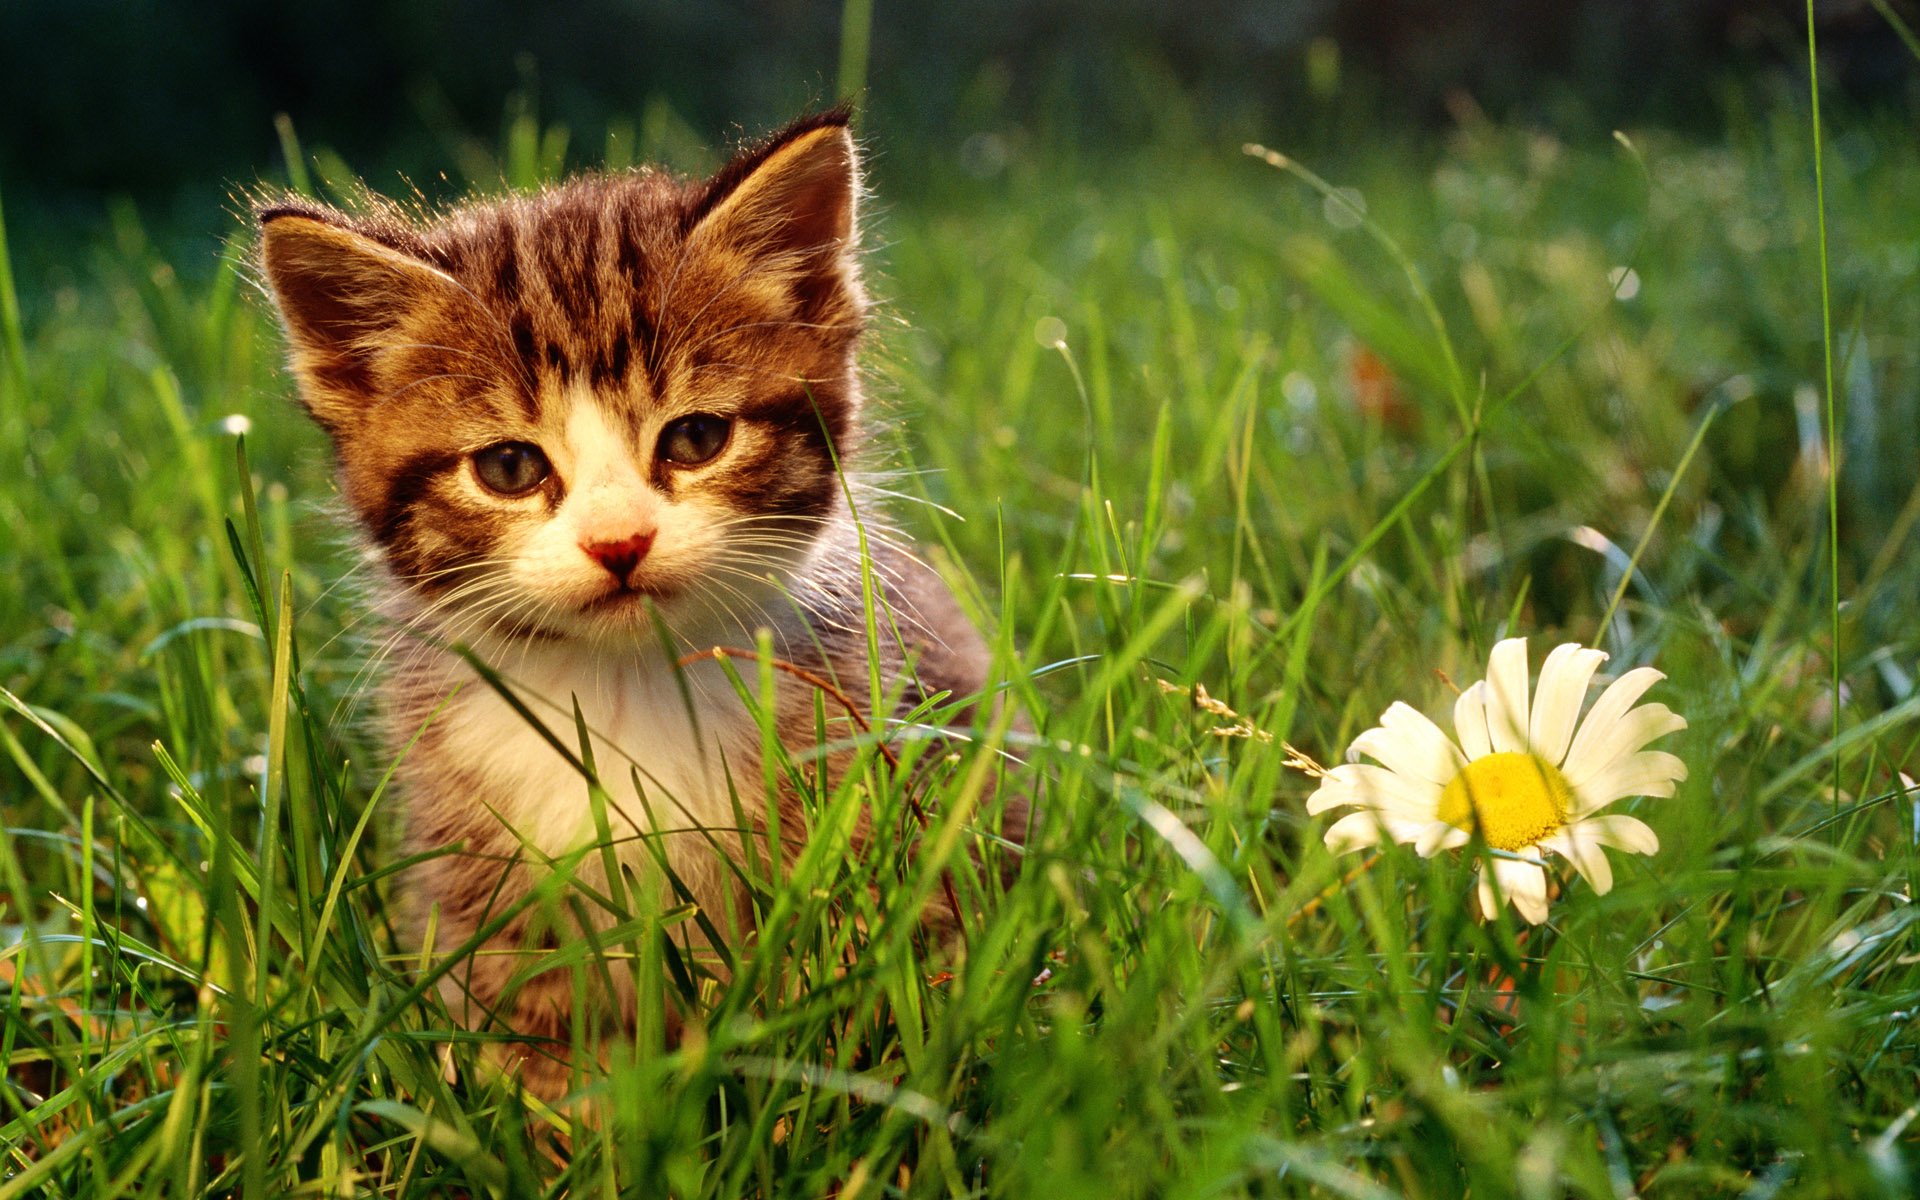 Hình nền cho Laptop chú mèo con trên bãi cỏ xanh đẹp